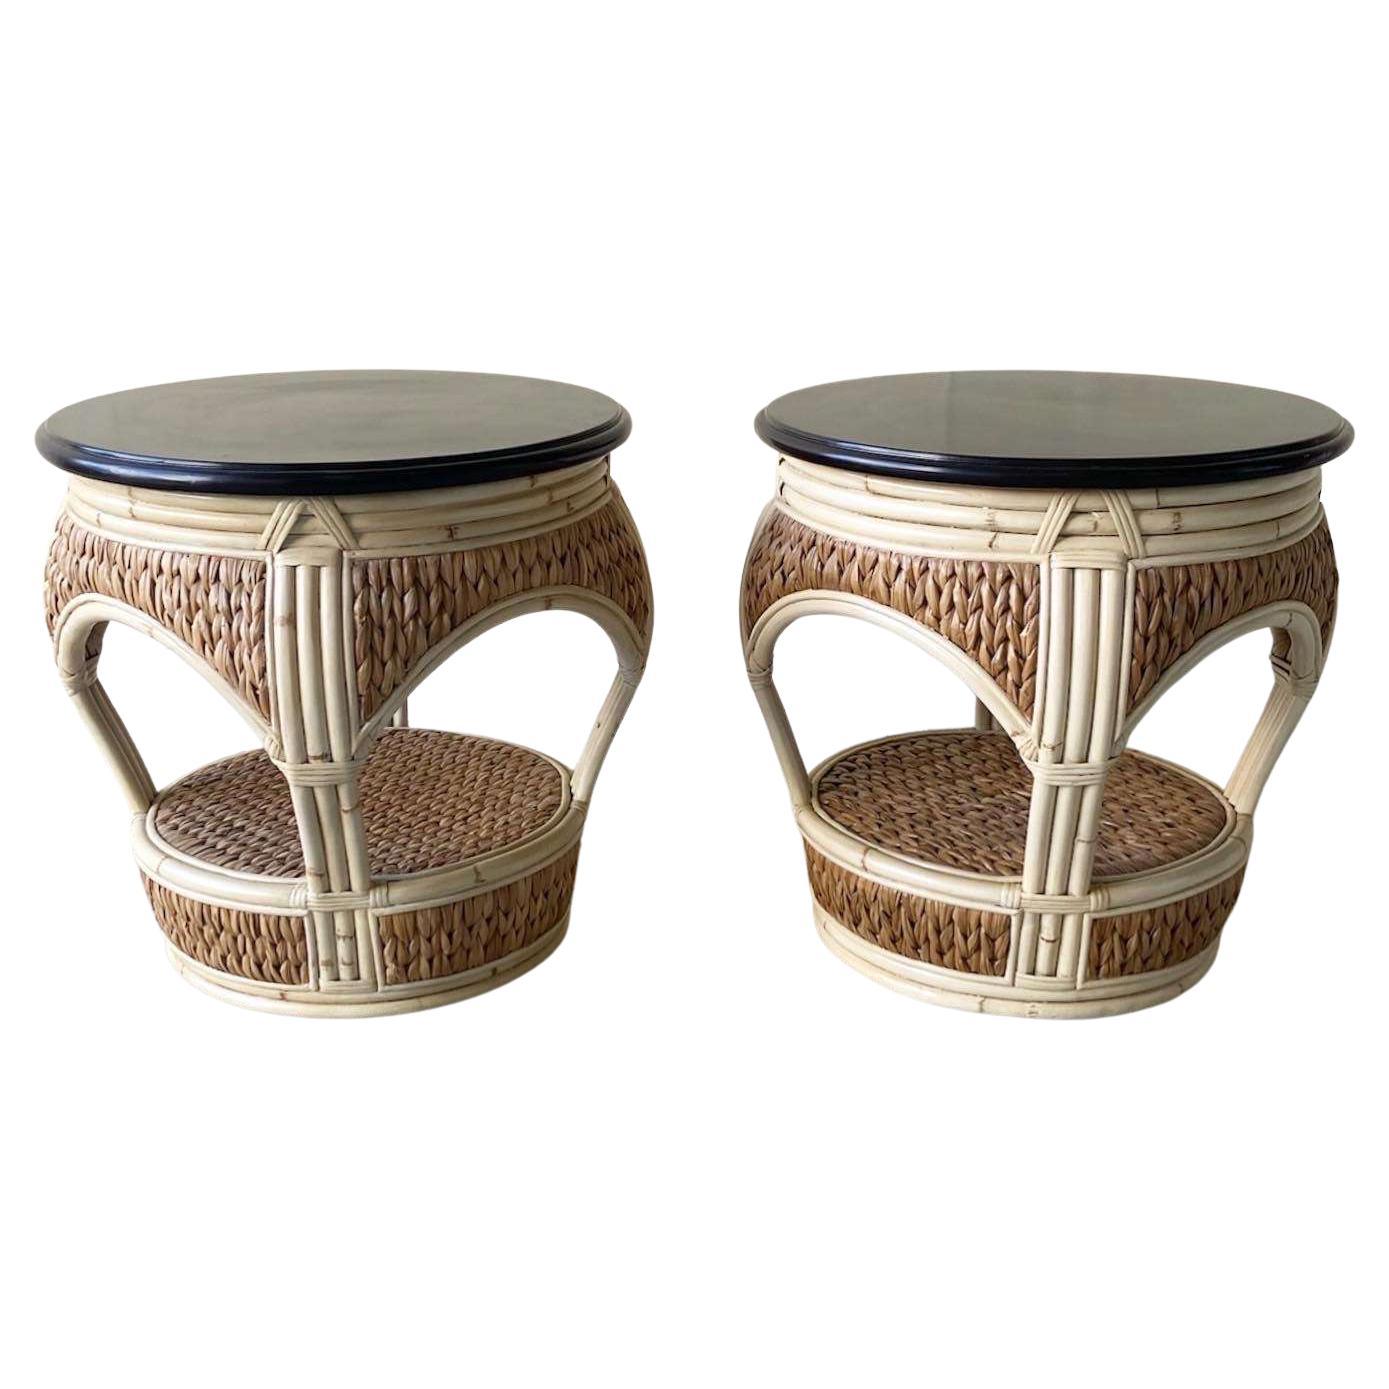 Runde Beistelltische aus Bambus und Seegras im Boho-Chic-Stil – ein Paar im Angebot